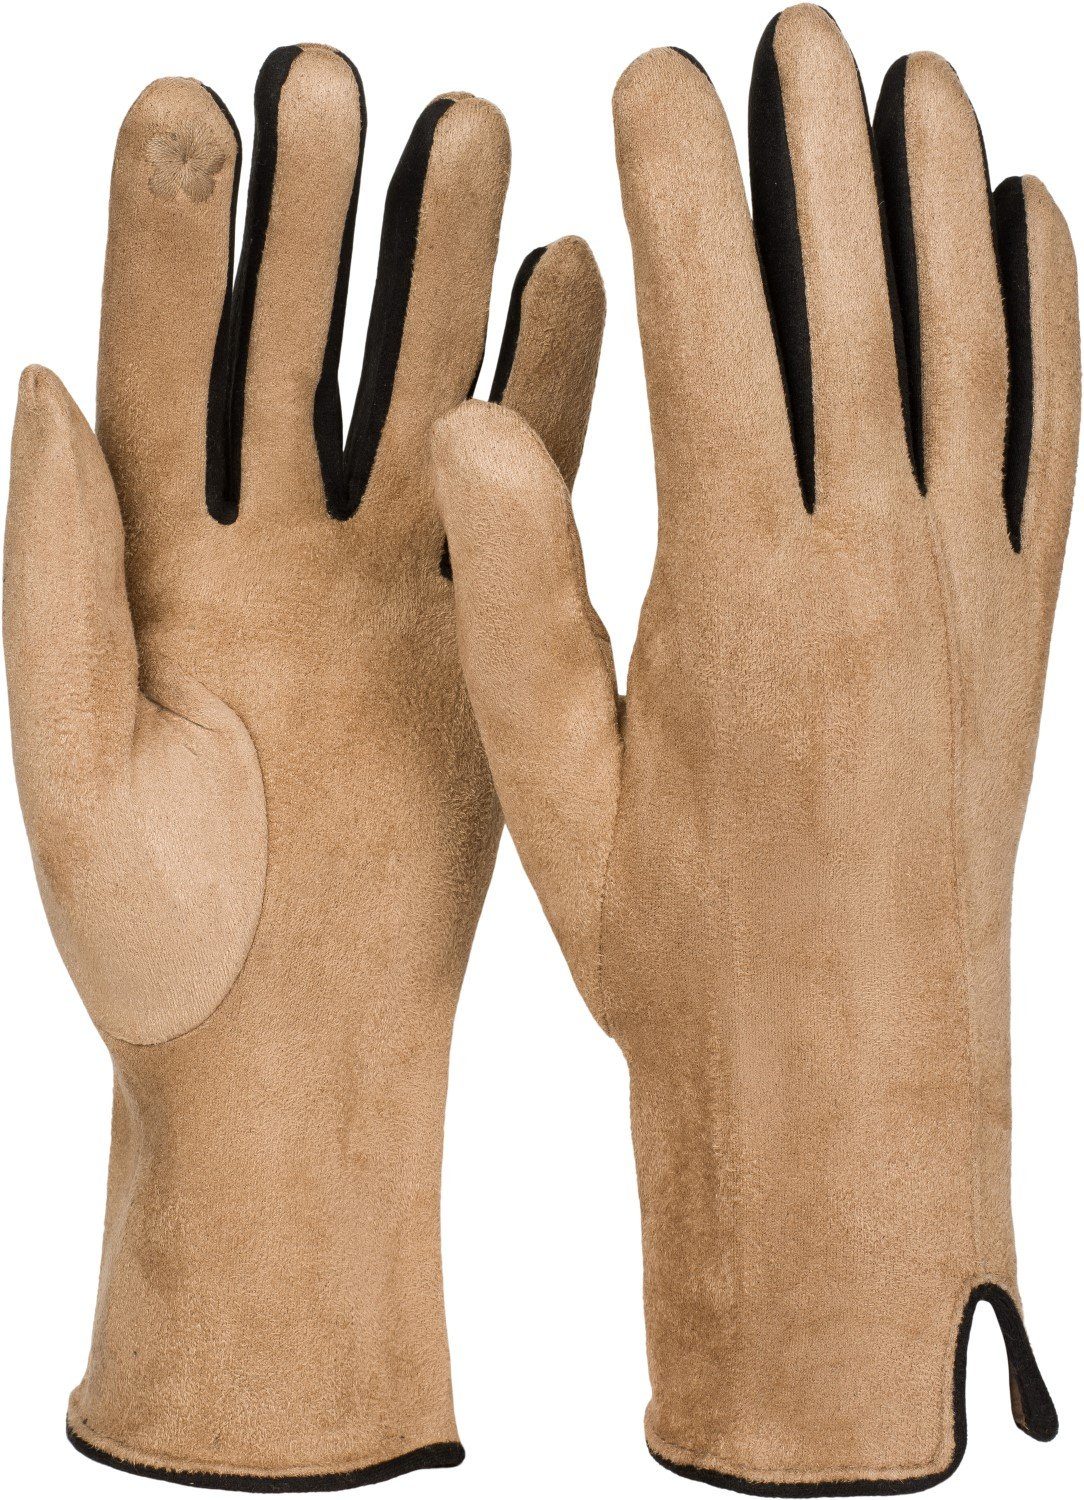 mumbi Handschuhe für Handy Tablet Touchscreen Damen Herren Größe M Gloves braun 